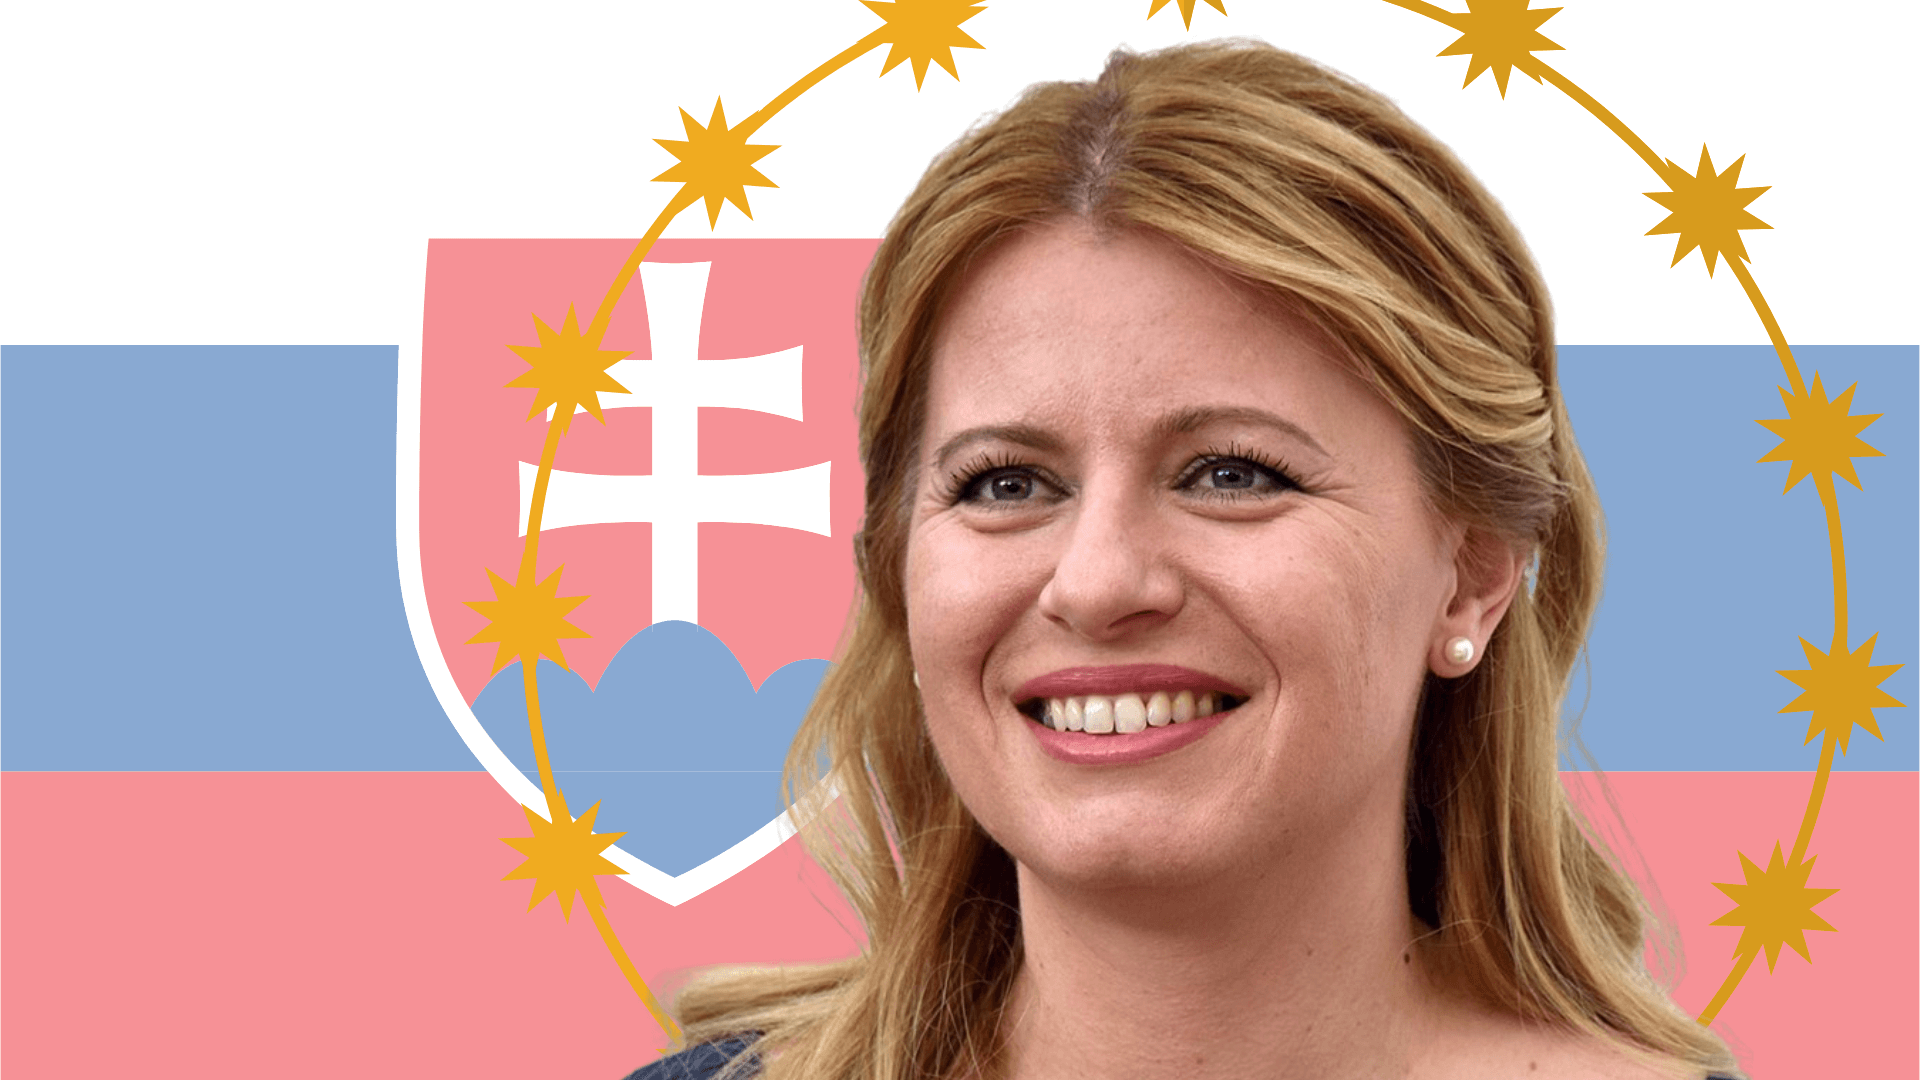 Beneficial Unconventionality How Zuzana Čaputová Became Slovakias First Female President